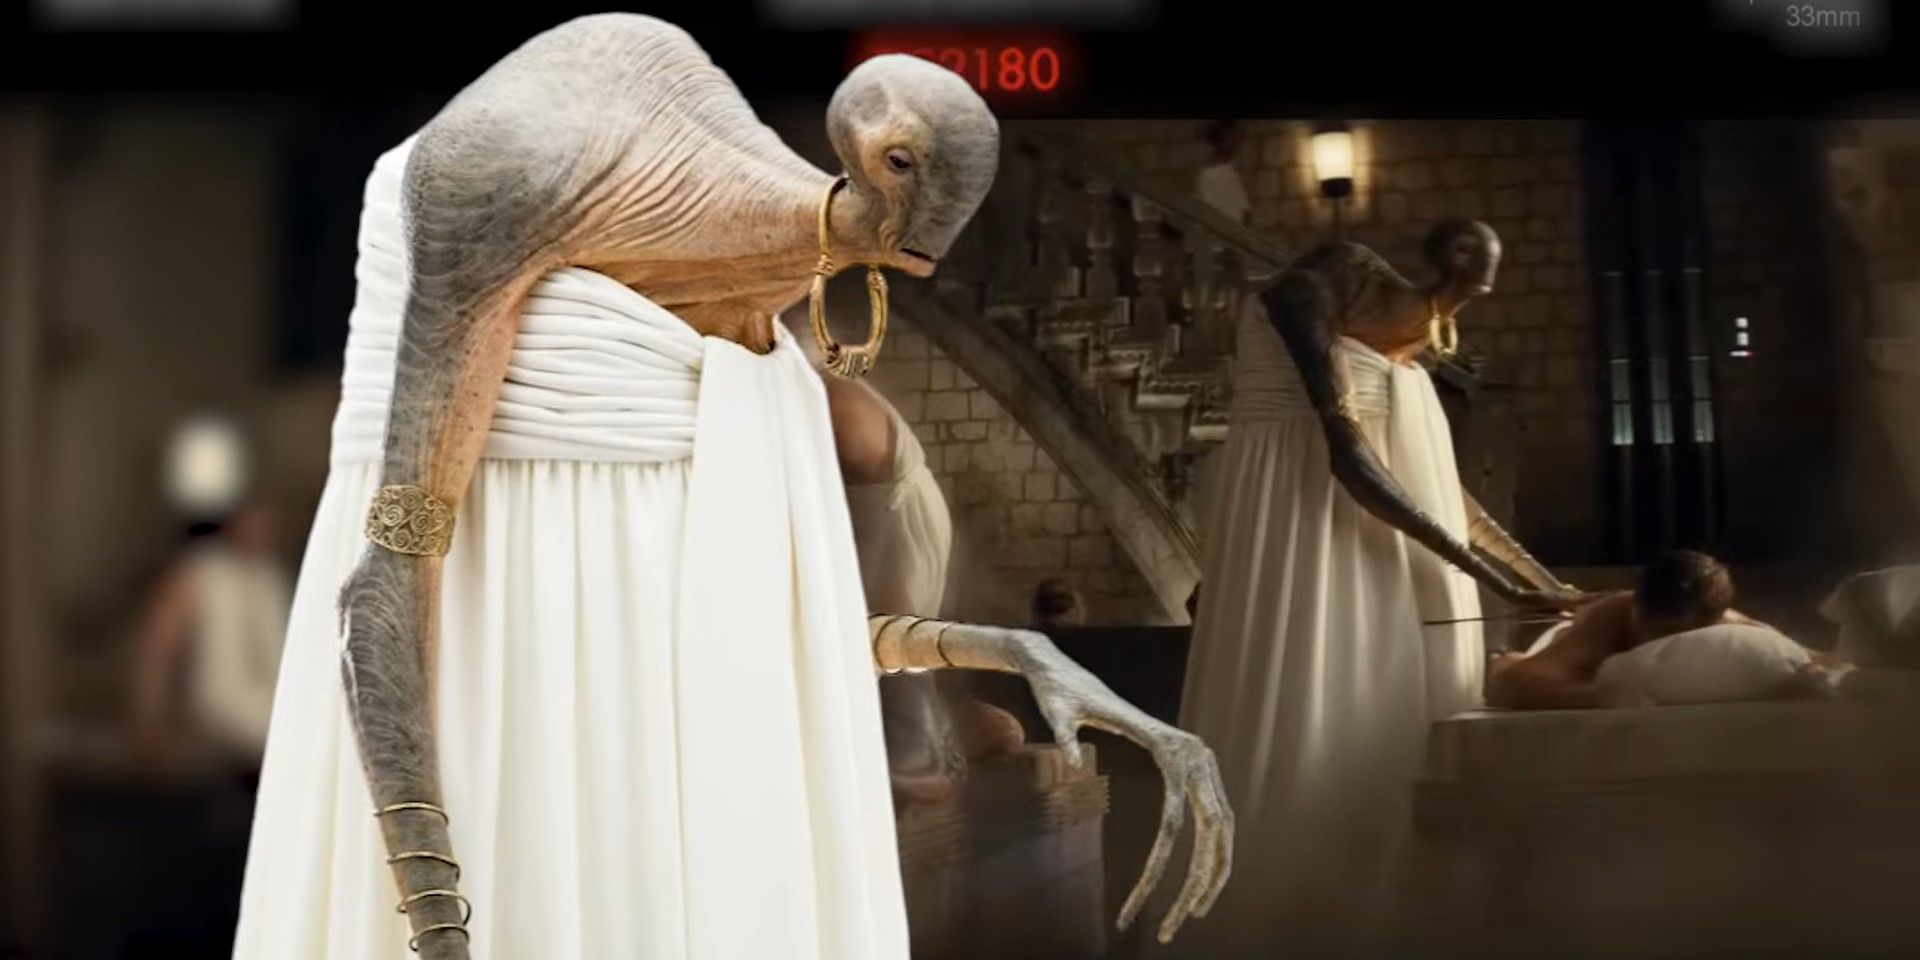 O Dor Namethian Lexo Sooger fazendo uma massagem em um cliente em uma cena excluída de Star Wars: Episódio VIII - Os Últimos Jedi